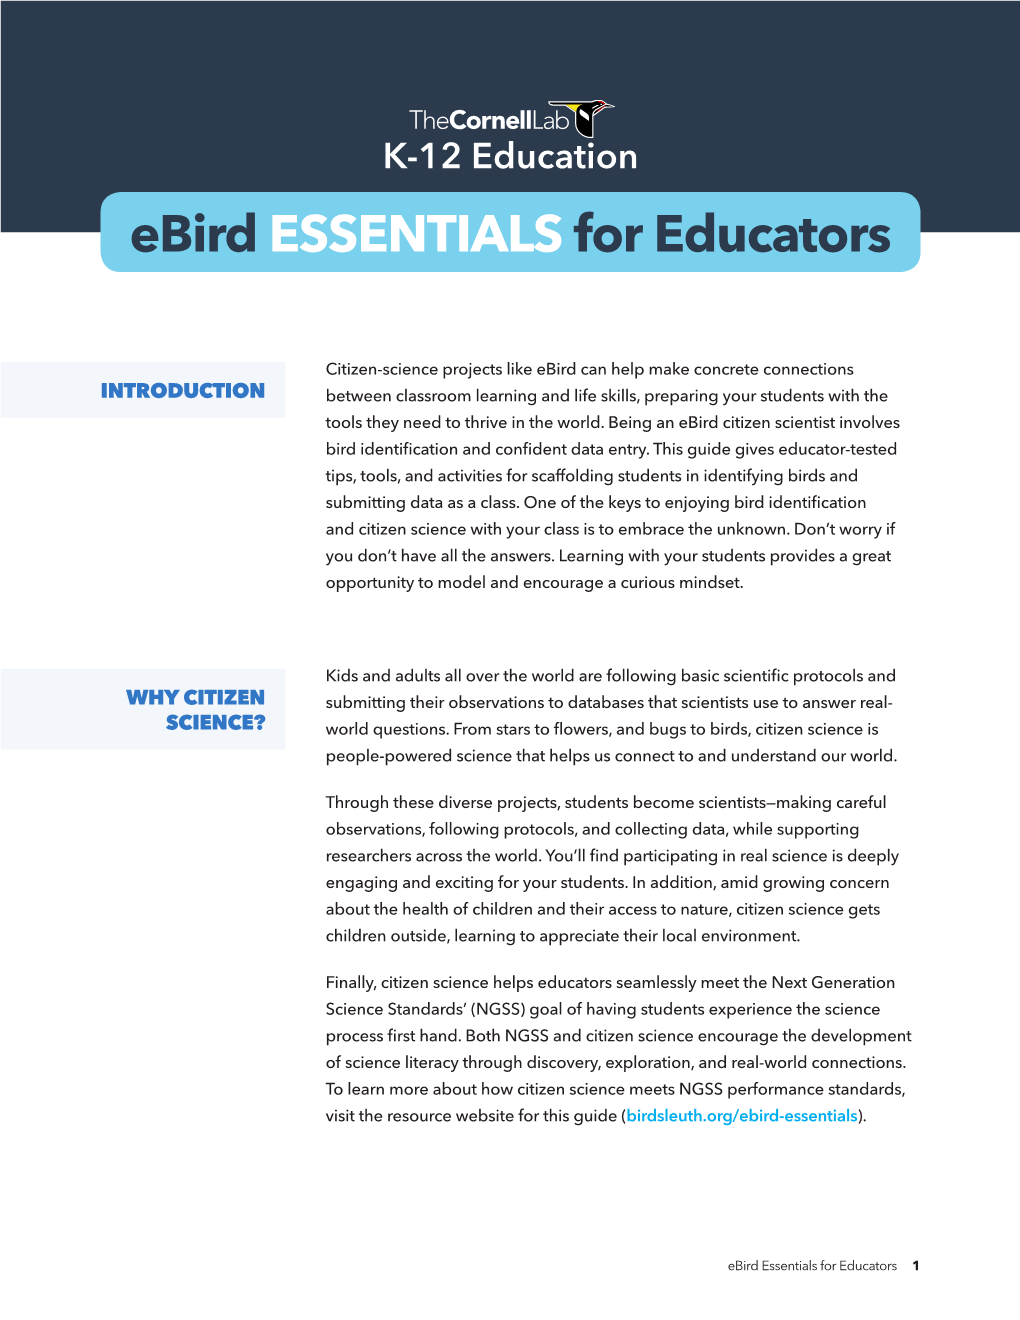 Ebird ESSENTIALS for Educators